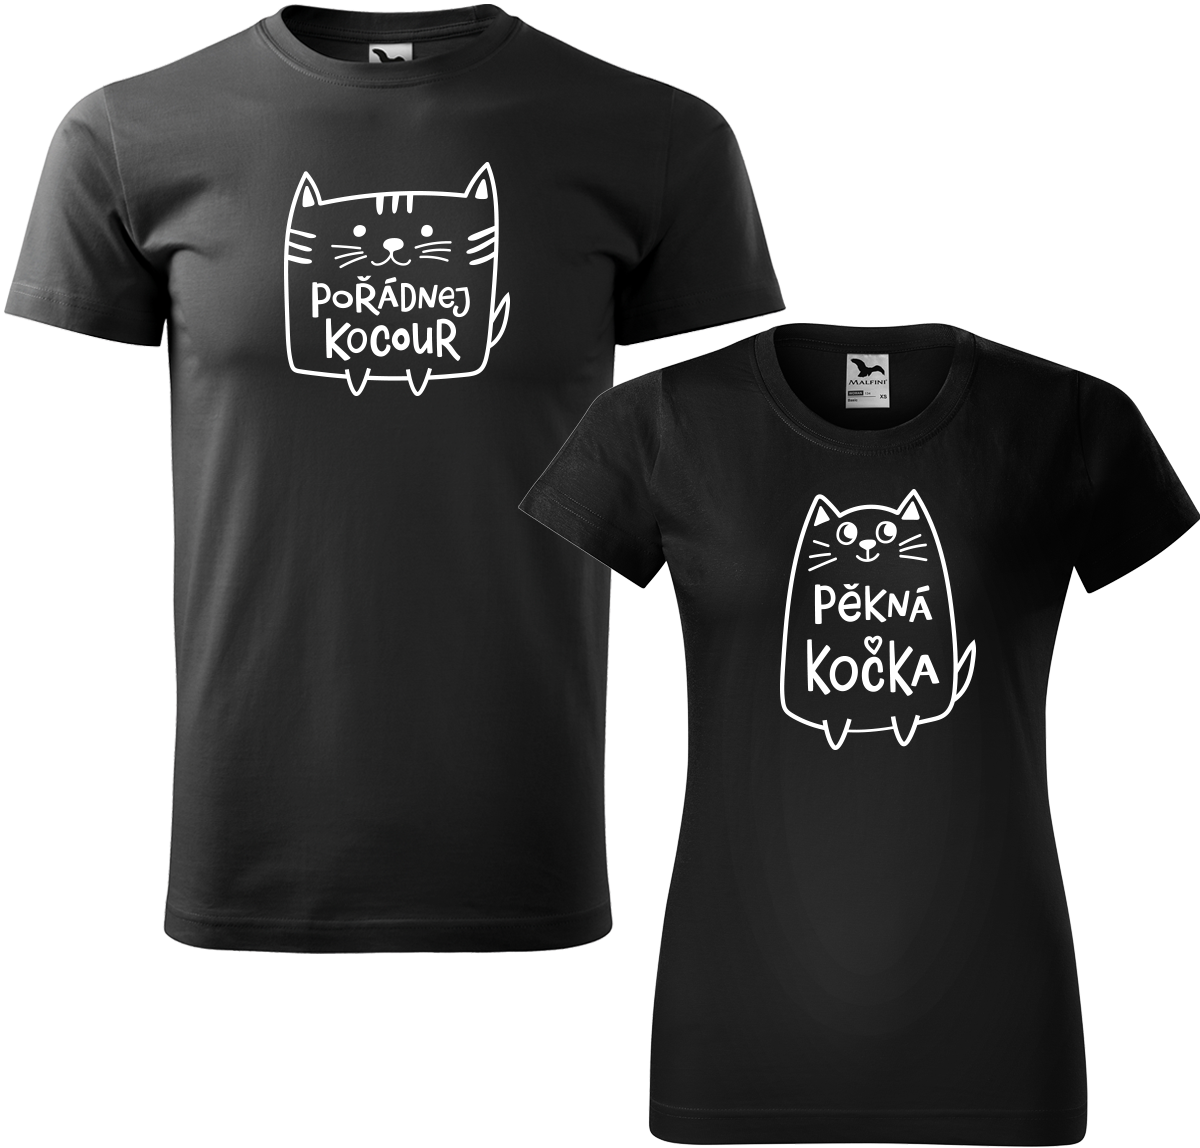 Trička pro páry - Pořádnej kocour a pěkná kočka Barva: Černá (01), Velikost dámské tričko: S, Velikost pánské tričko: L